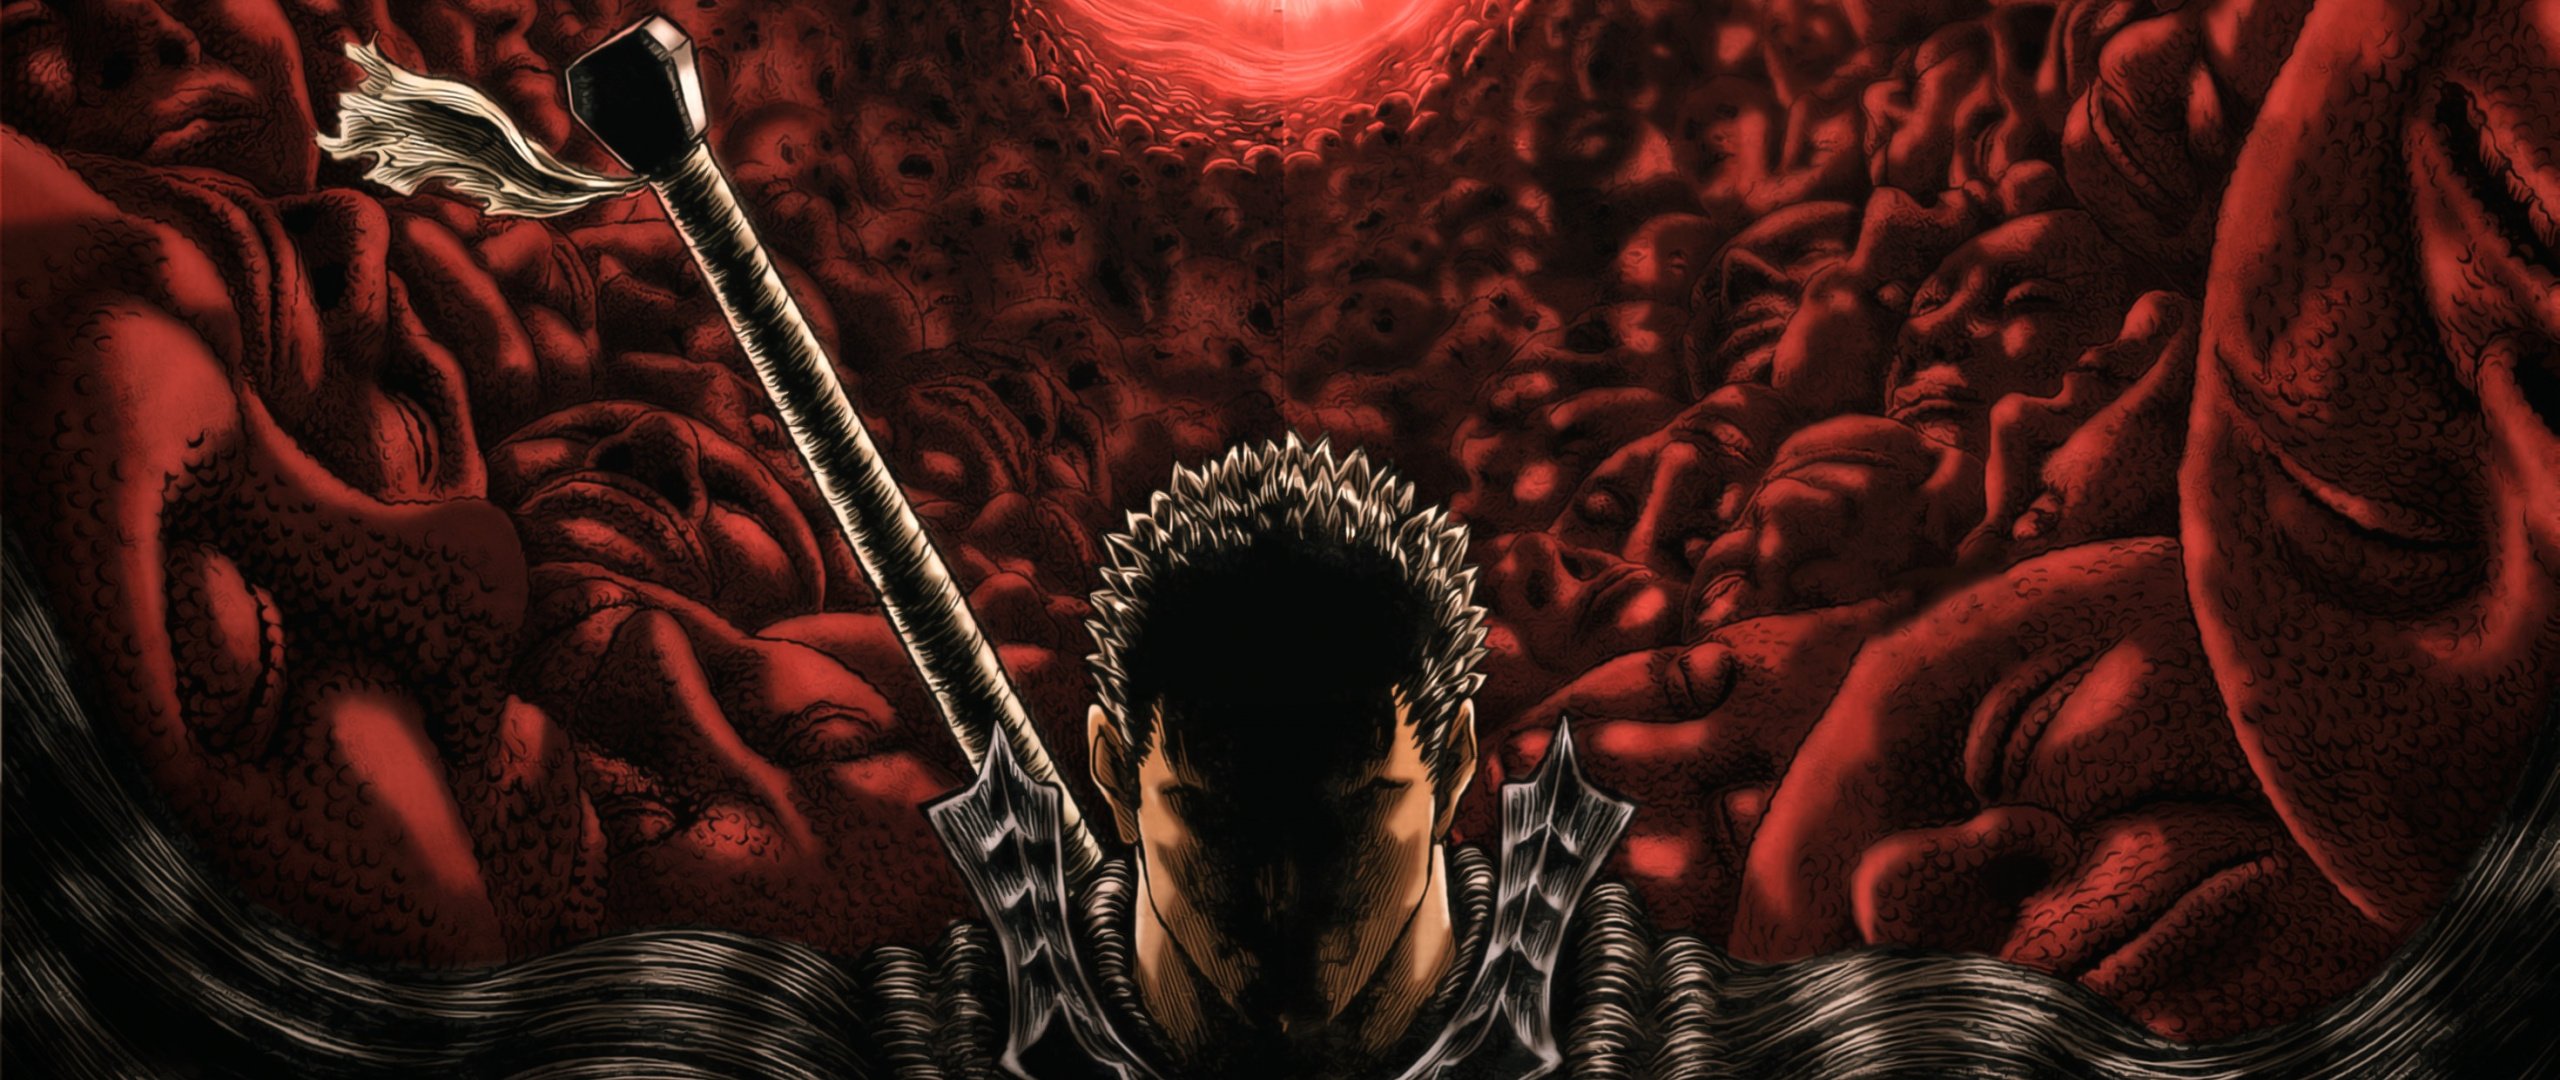 Download Berserk, anime, dark, warrior wallpaper, 2560x Dual Wide, Widescreen